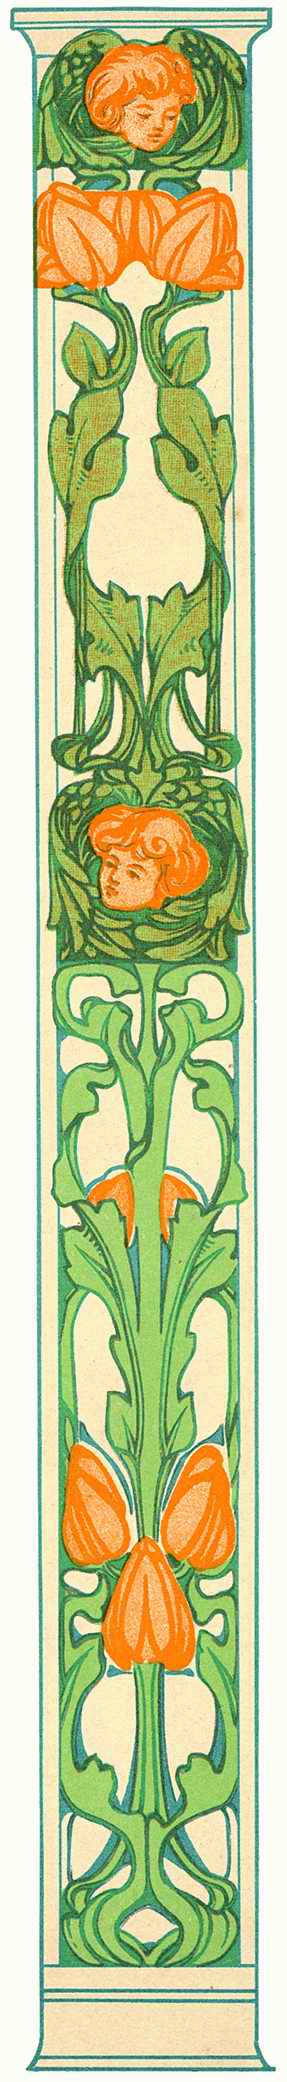 Art Nouveau Designs - Pepin Press ></a>
<script language=JavaScript> 
  var txt = 